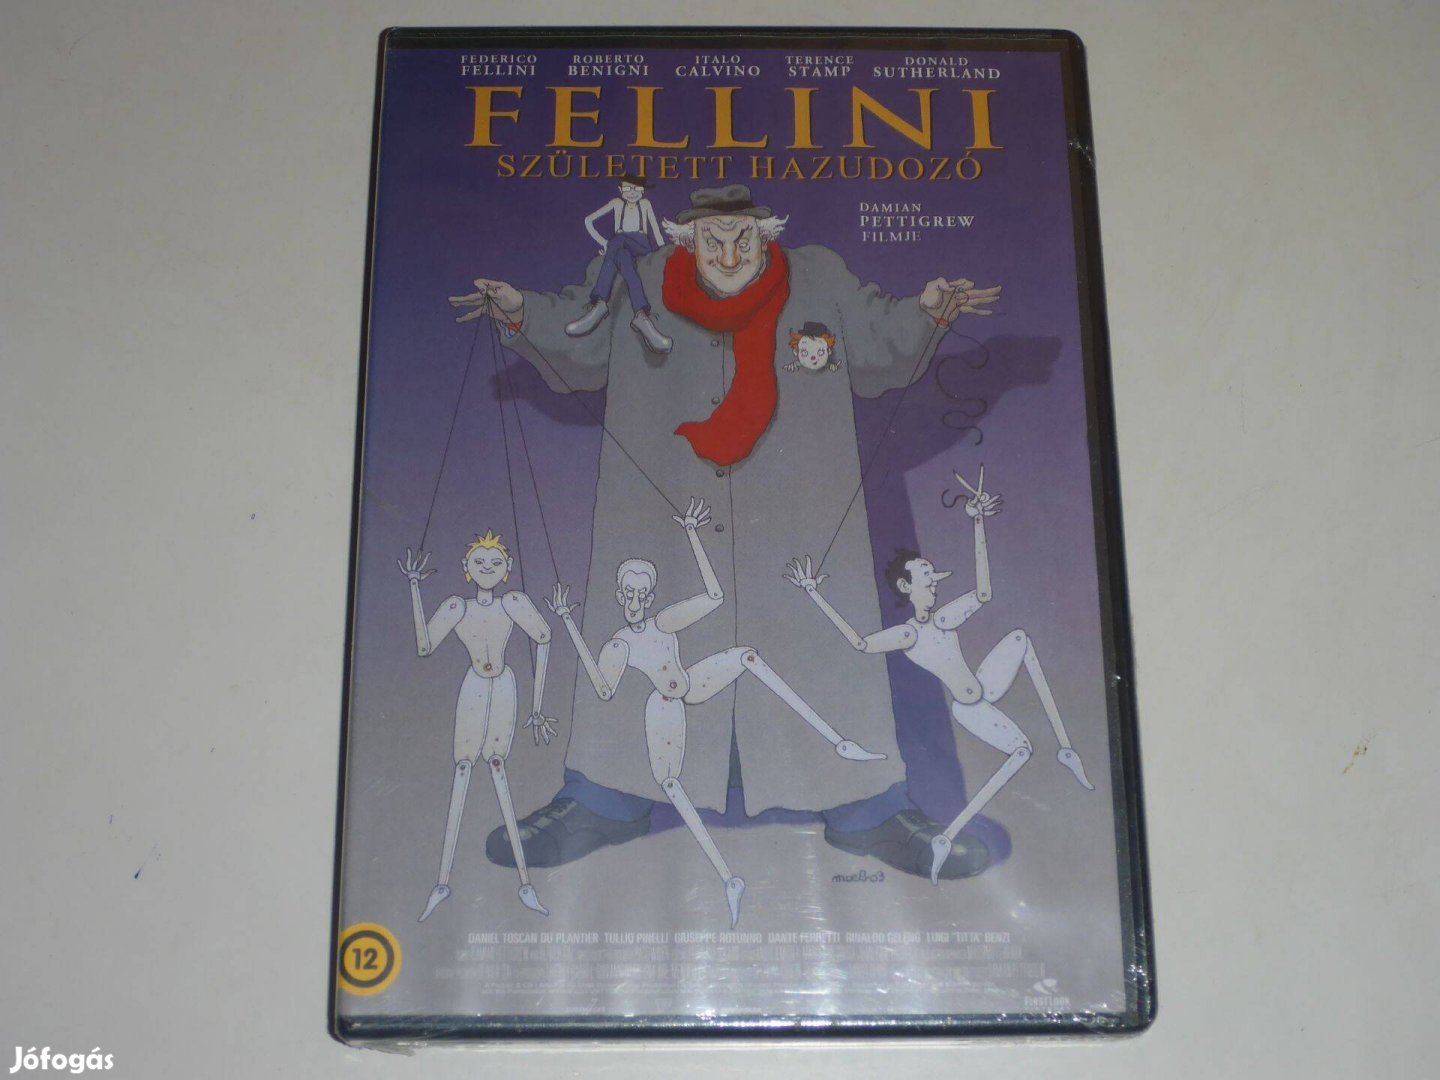 Fellini: Született hazudozó DVD film *